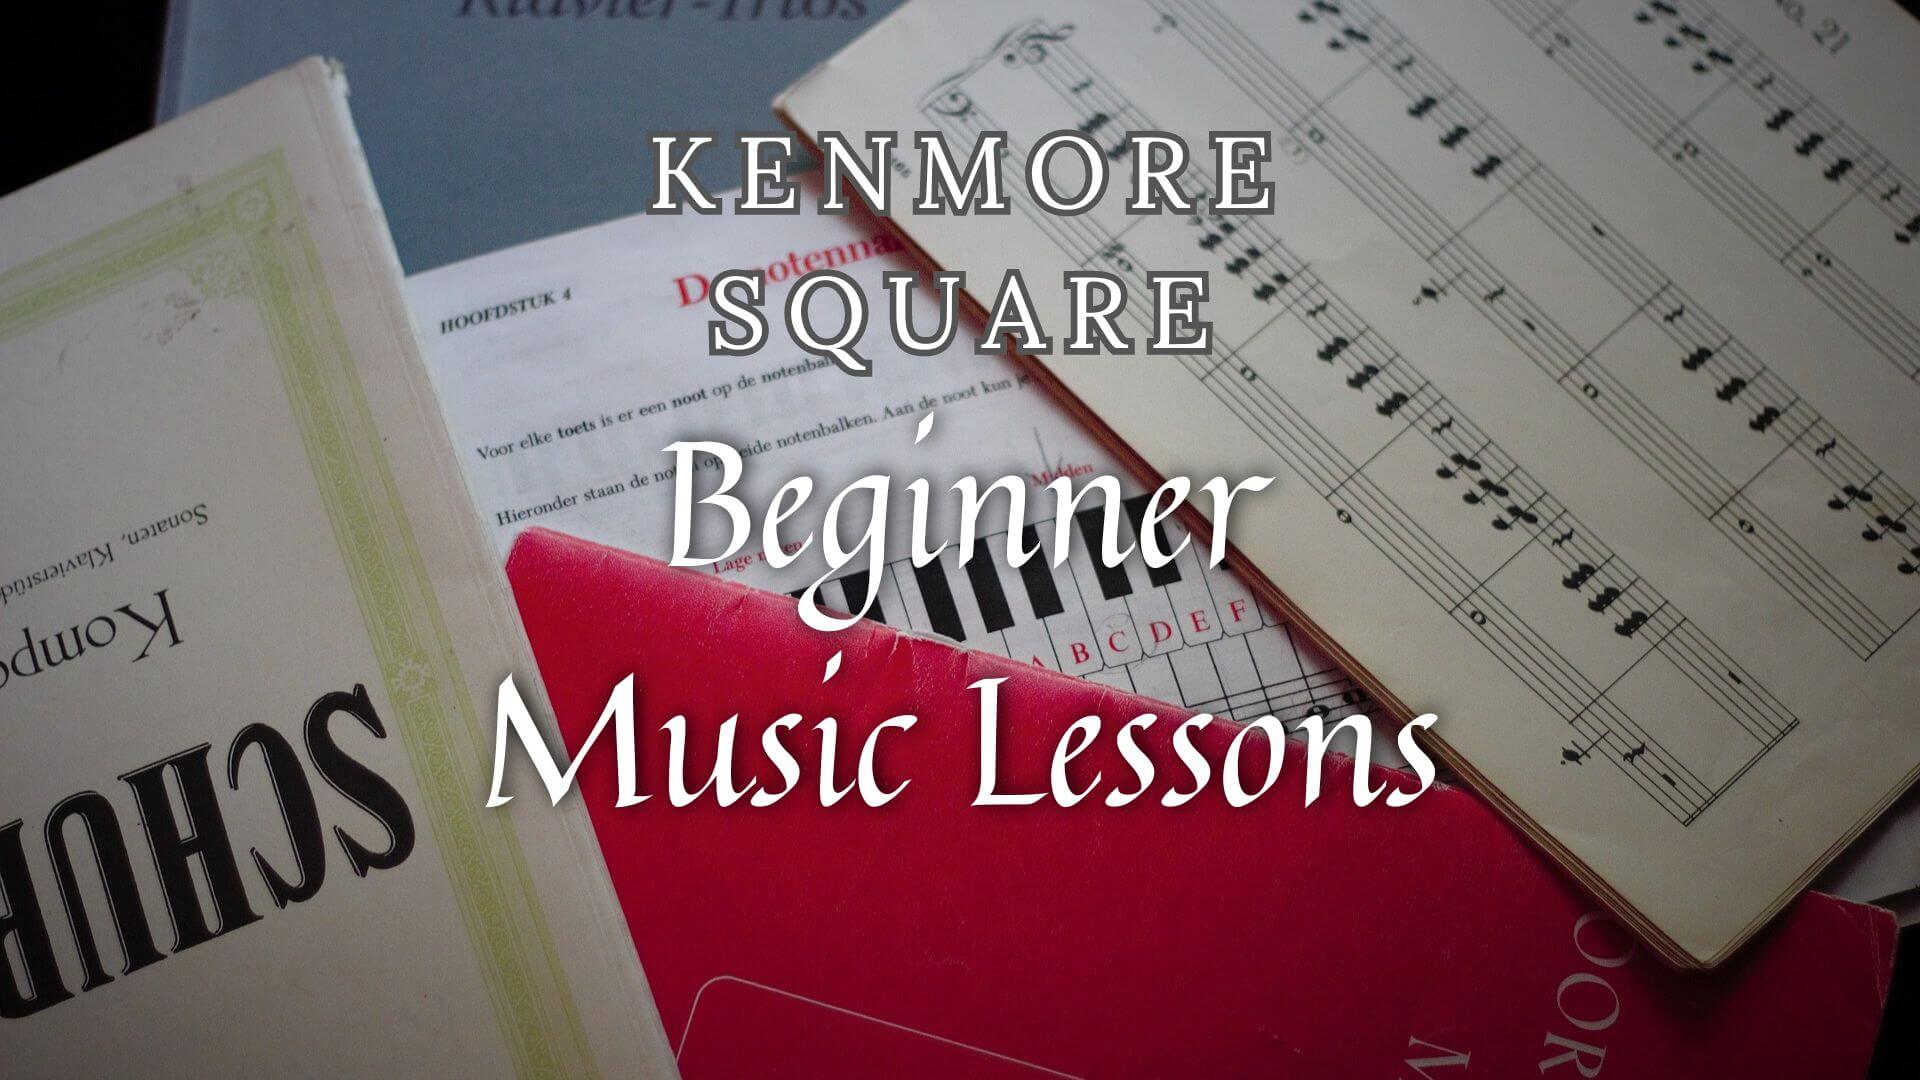 Beginner-Friendly Music Classes in Kenmore Square, Massachusetts